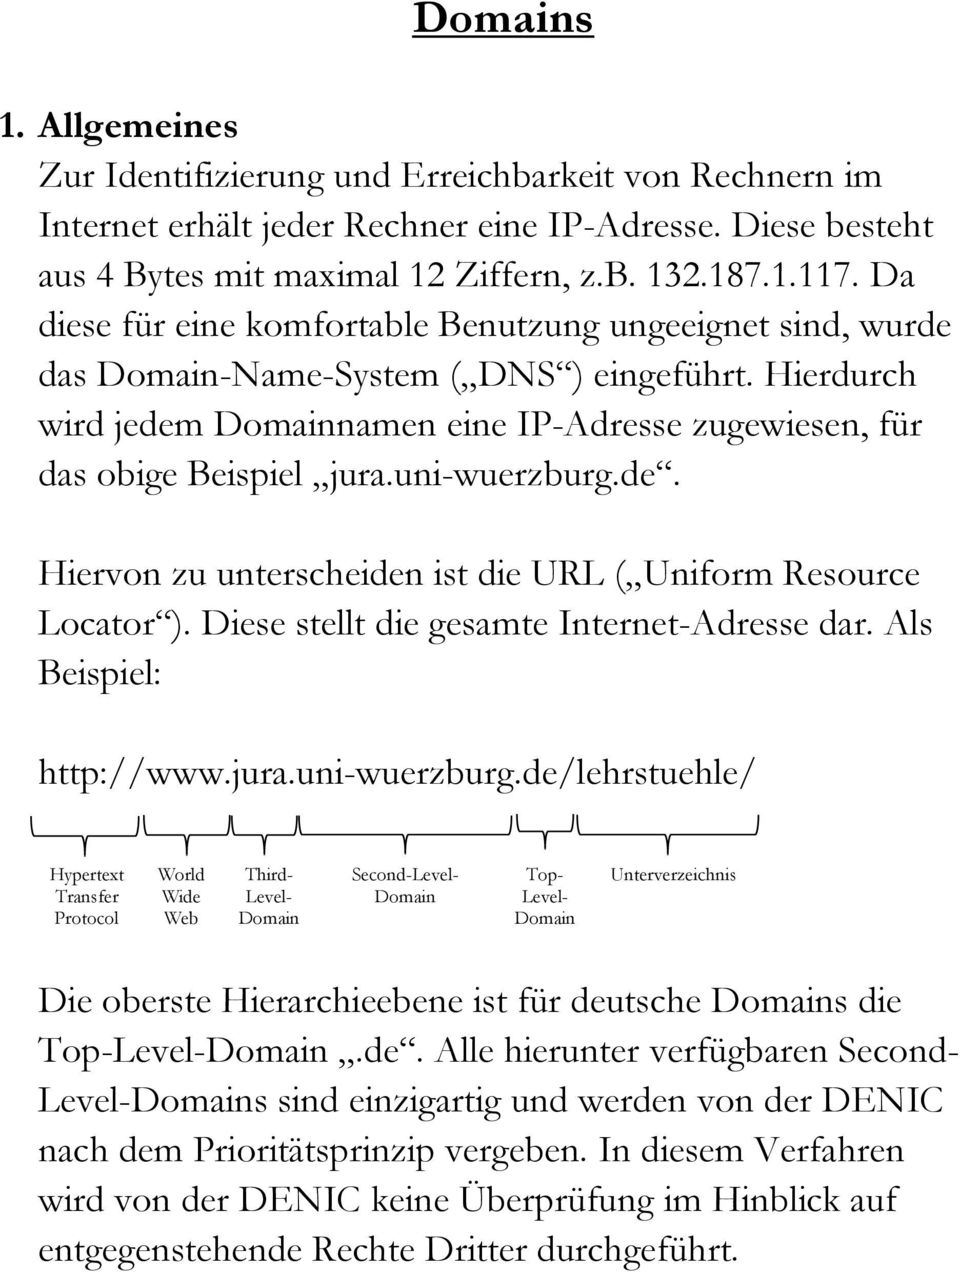 Diese stellt die gesamte Internet-Adresse dar. Als Beispiel: http://www.jura.uni-wuerzburg.